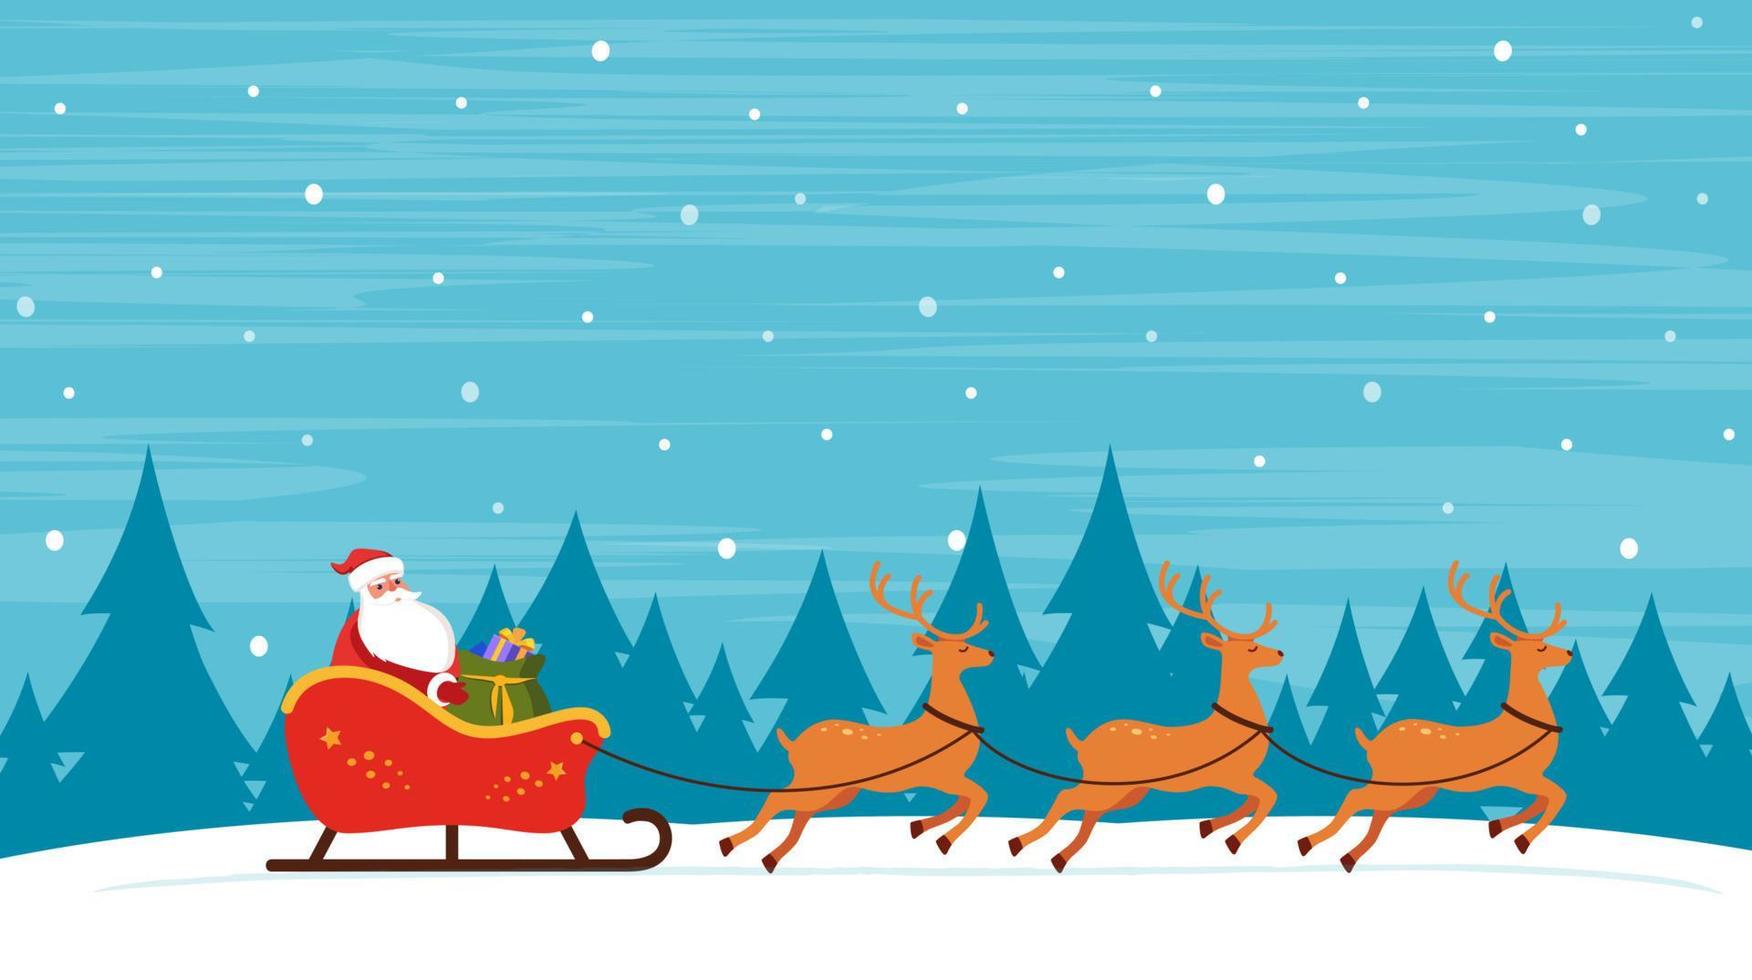 santa montando en trineo con renos sobre fondo nevado de invierno. Ilustración de vector de tarjeta de felicitación de Navidad.